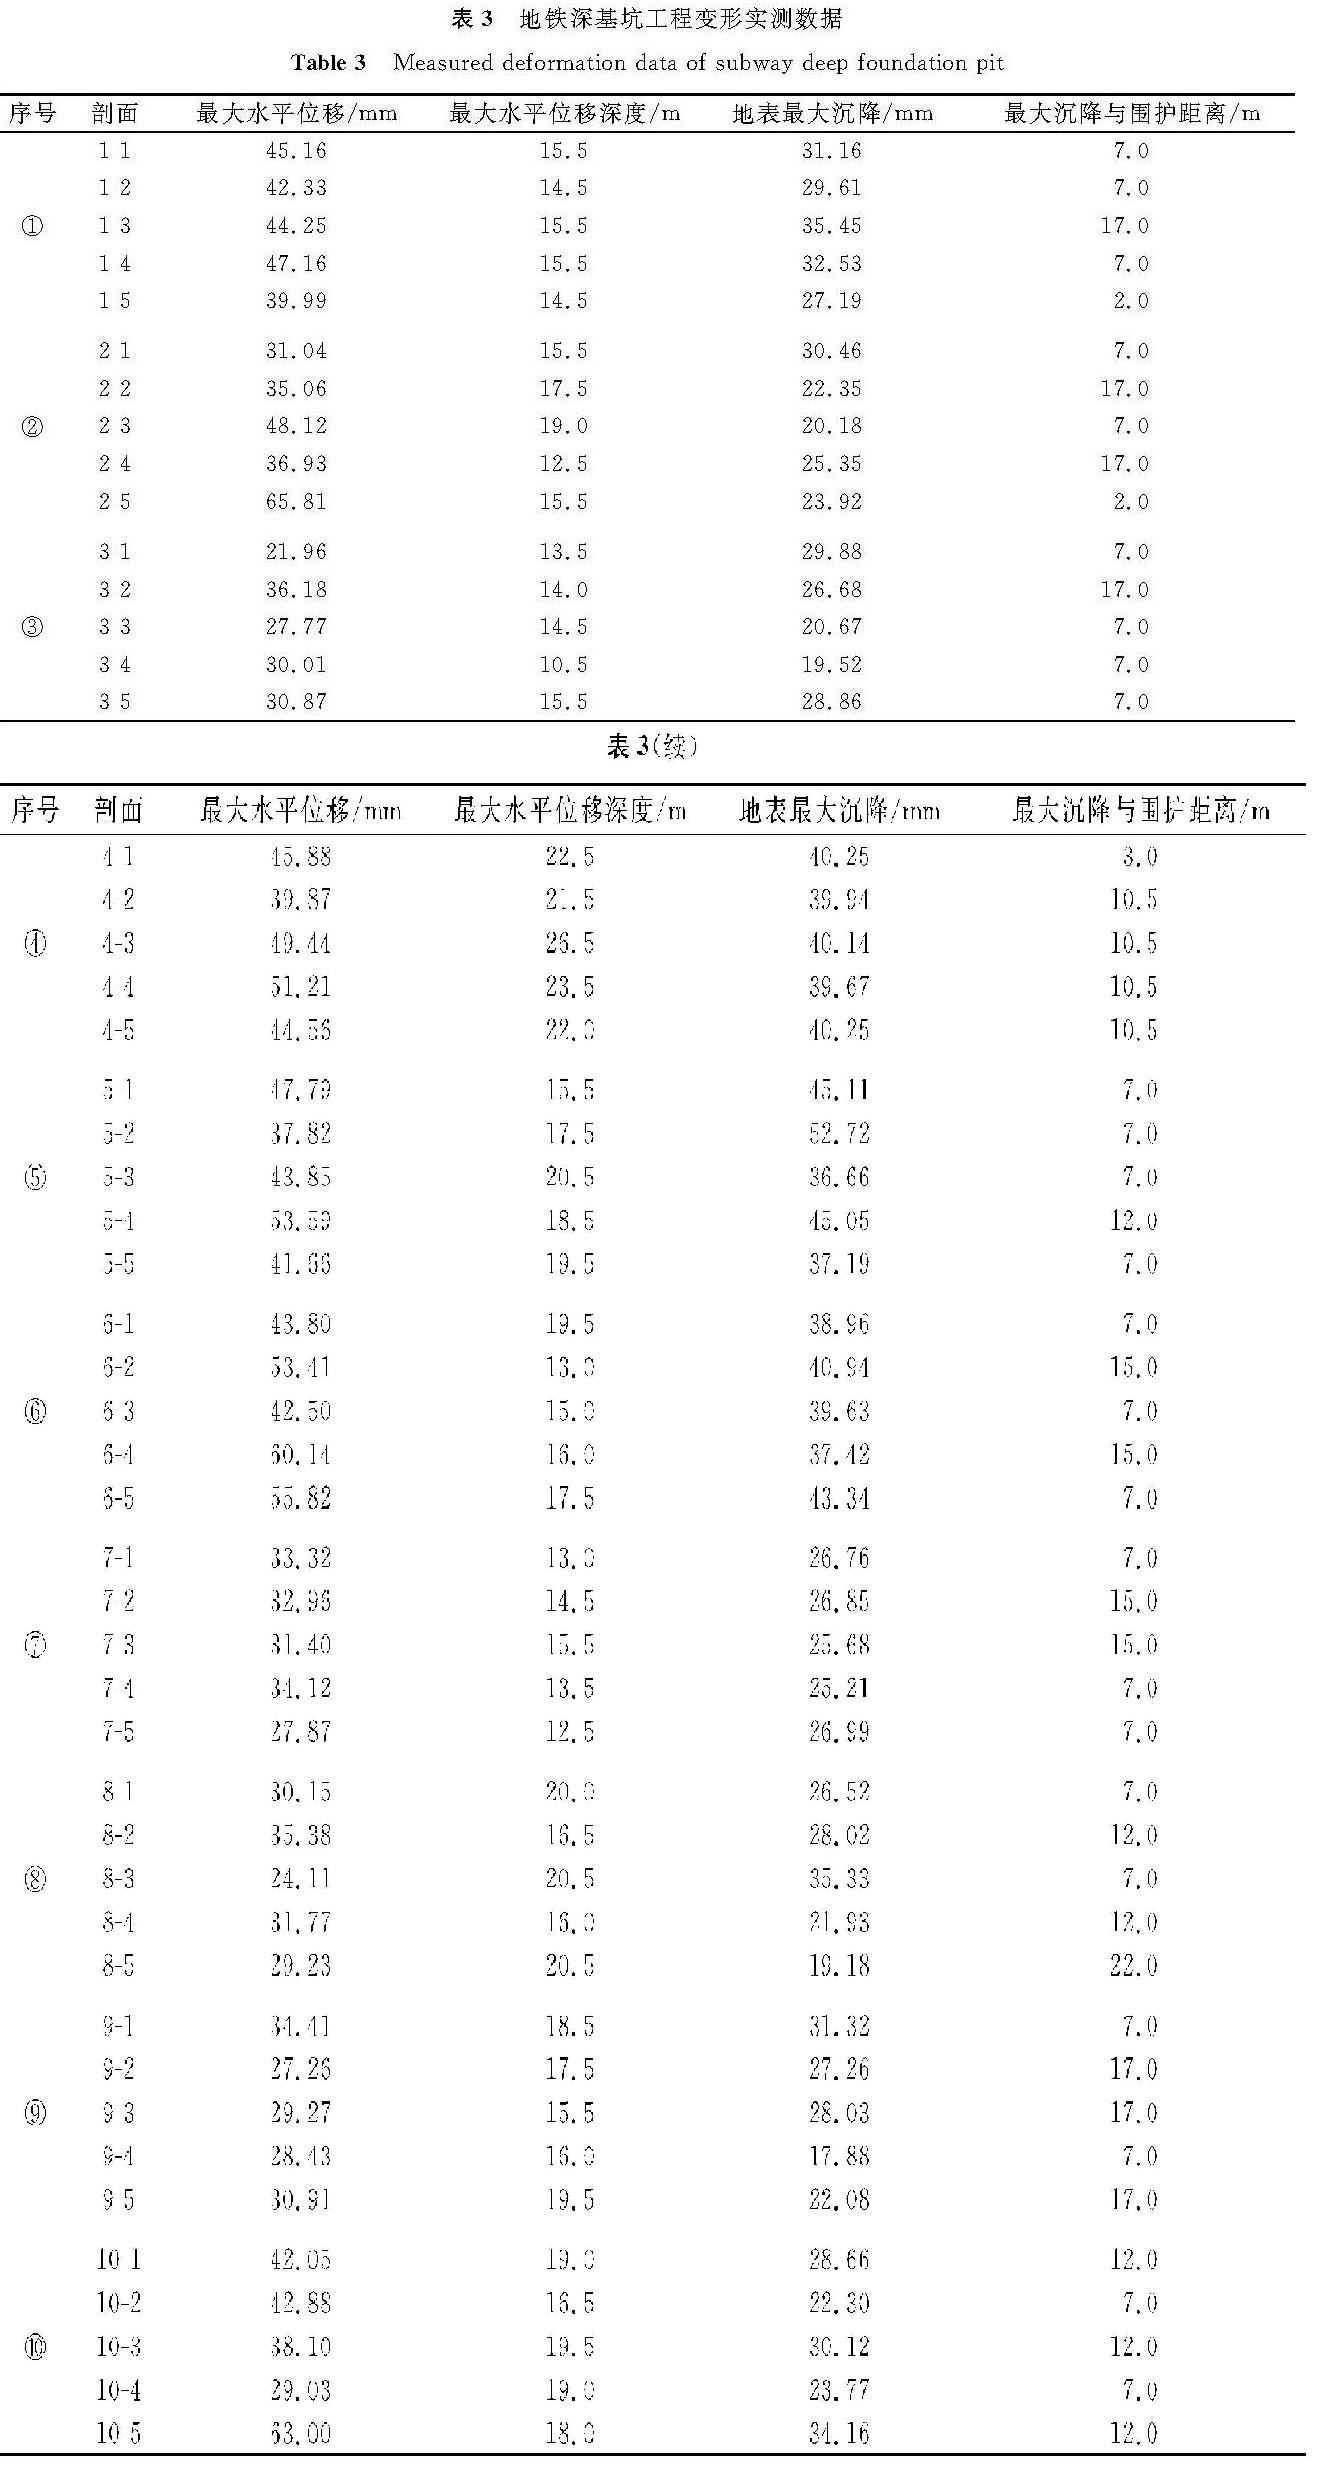 表3 地铁深基坑工程变形实测数据<br/>Table 3 Measured deformation data of subway deep foundation pit